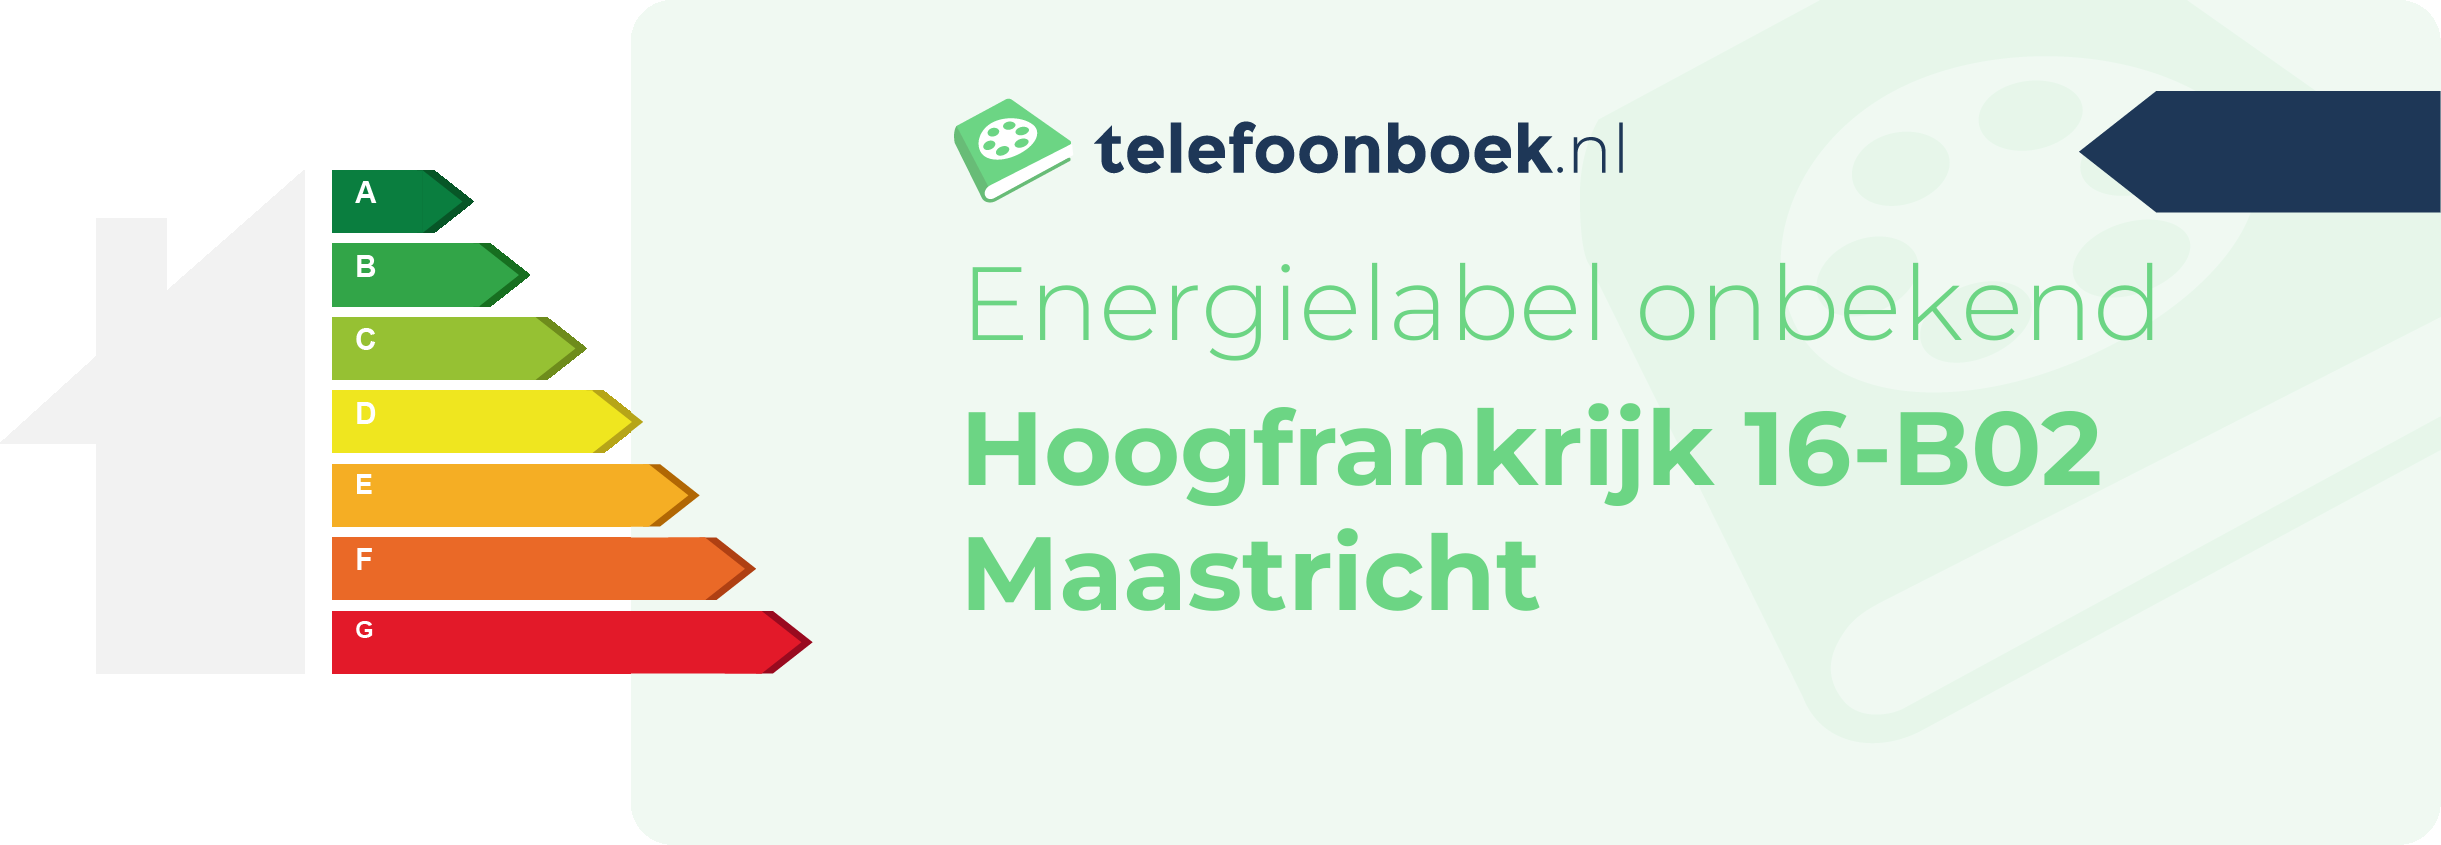 Energielabel Hoogfrankrijk 16-B02 Maastricht